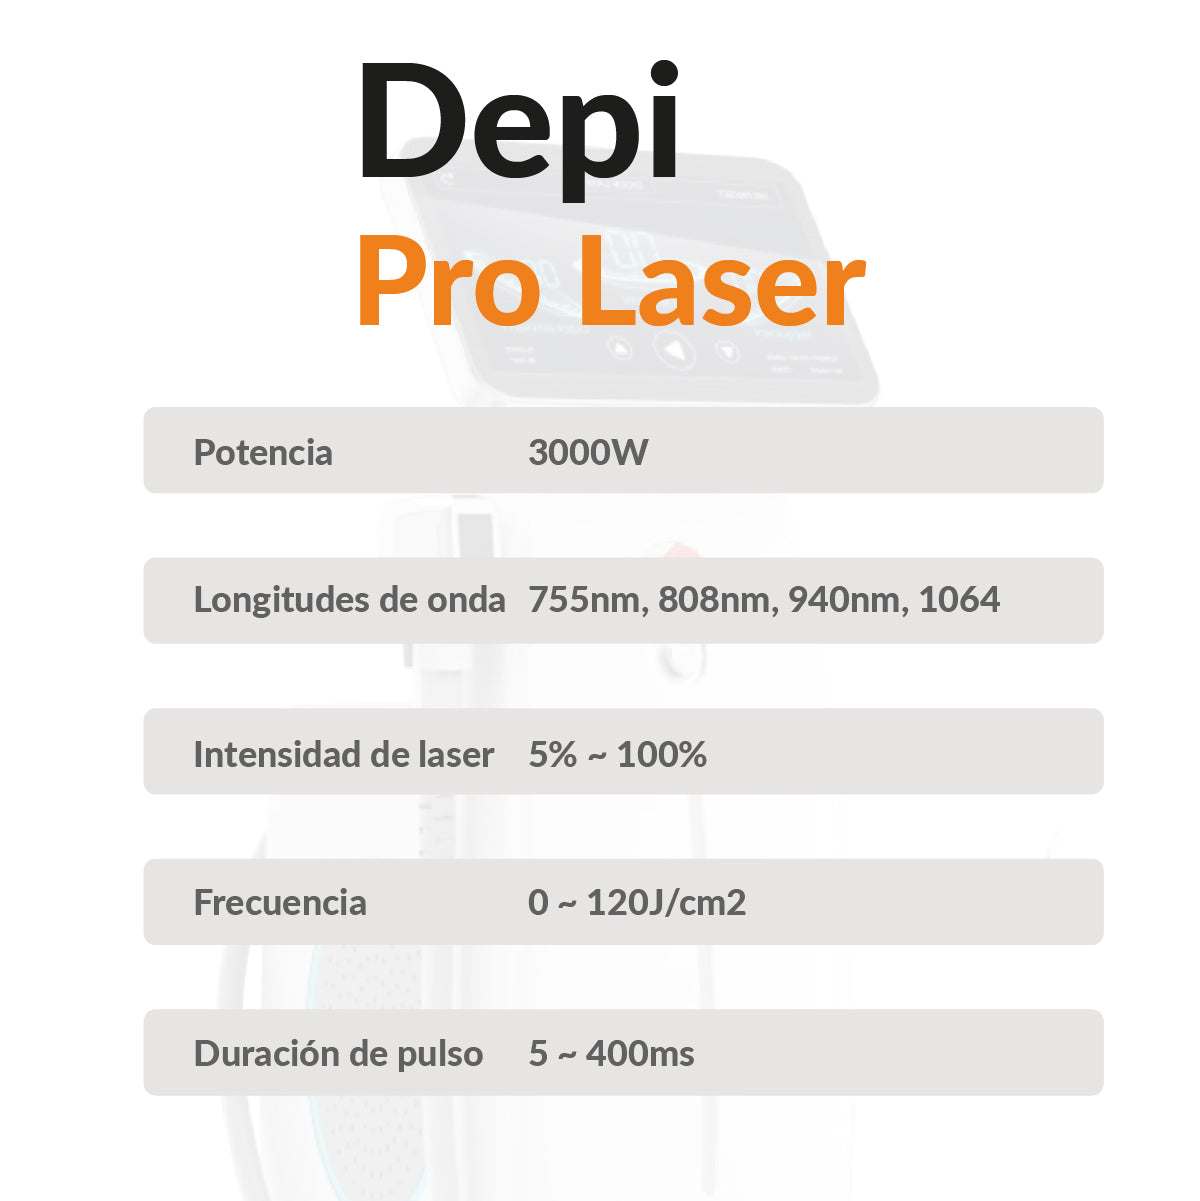 Depi Pro Laser